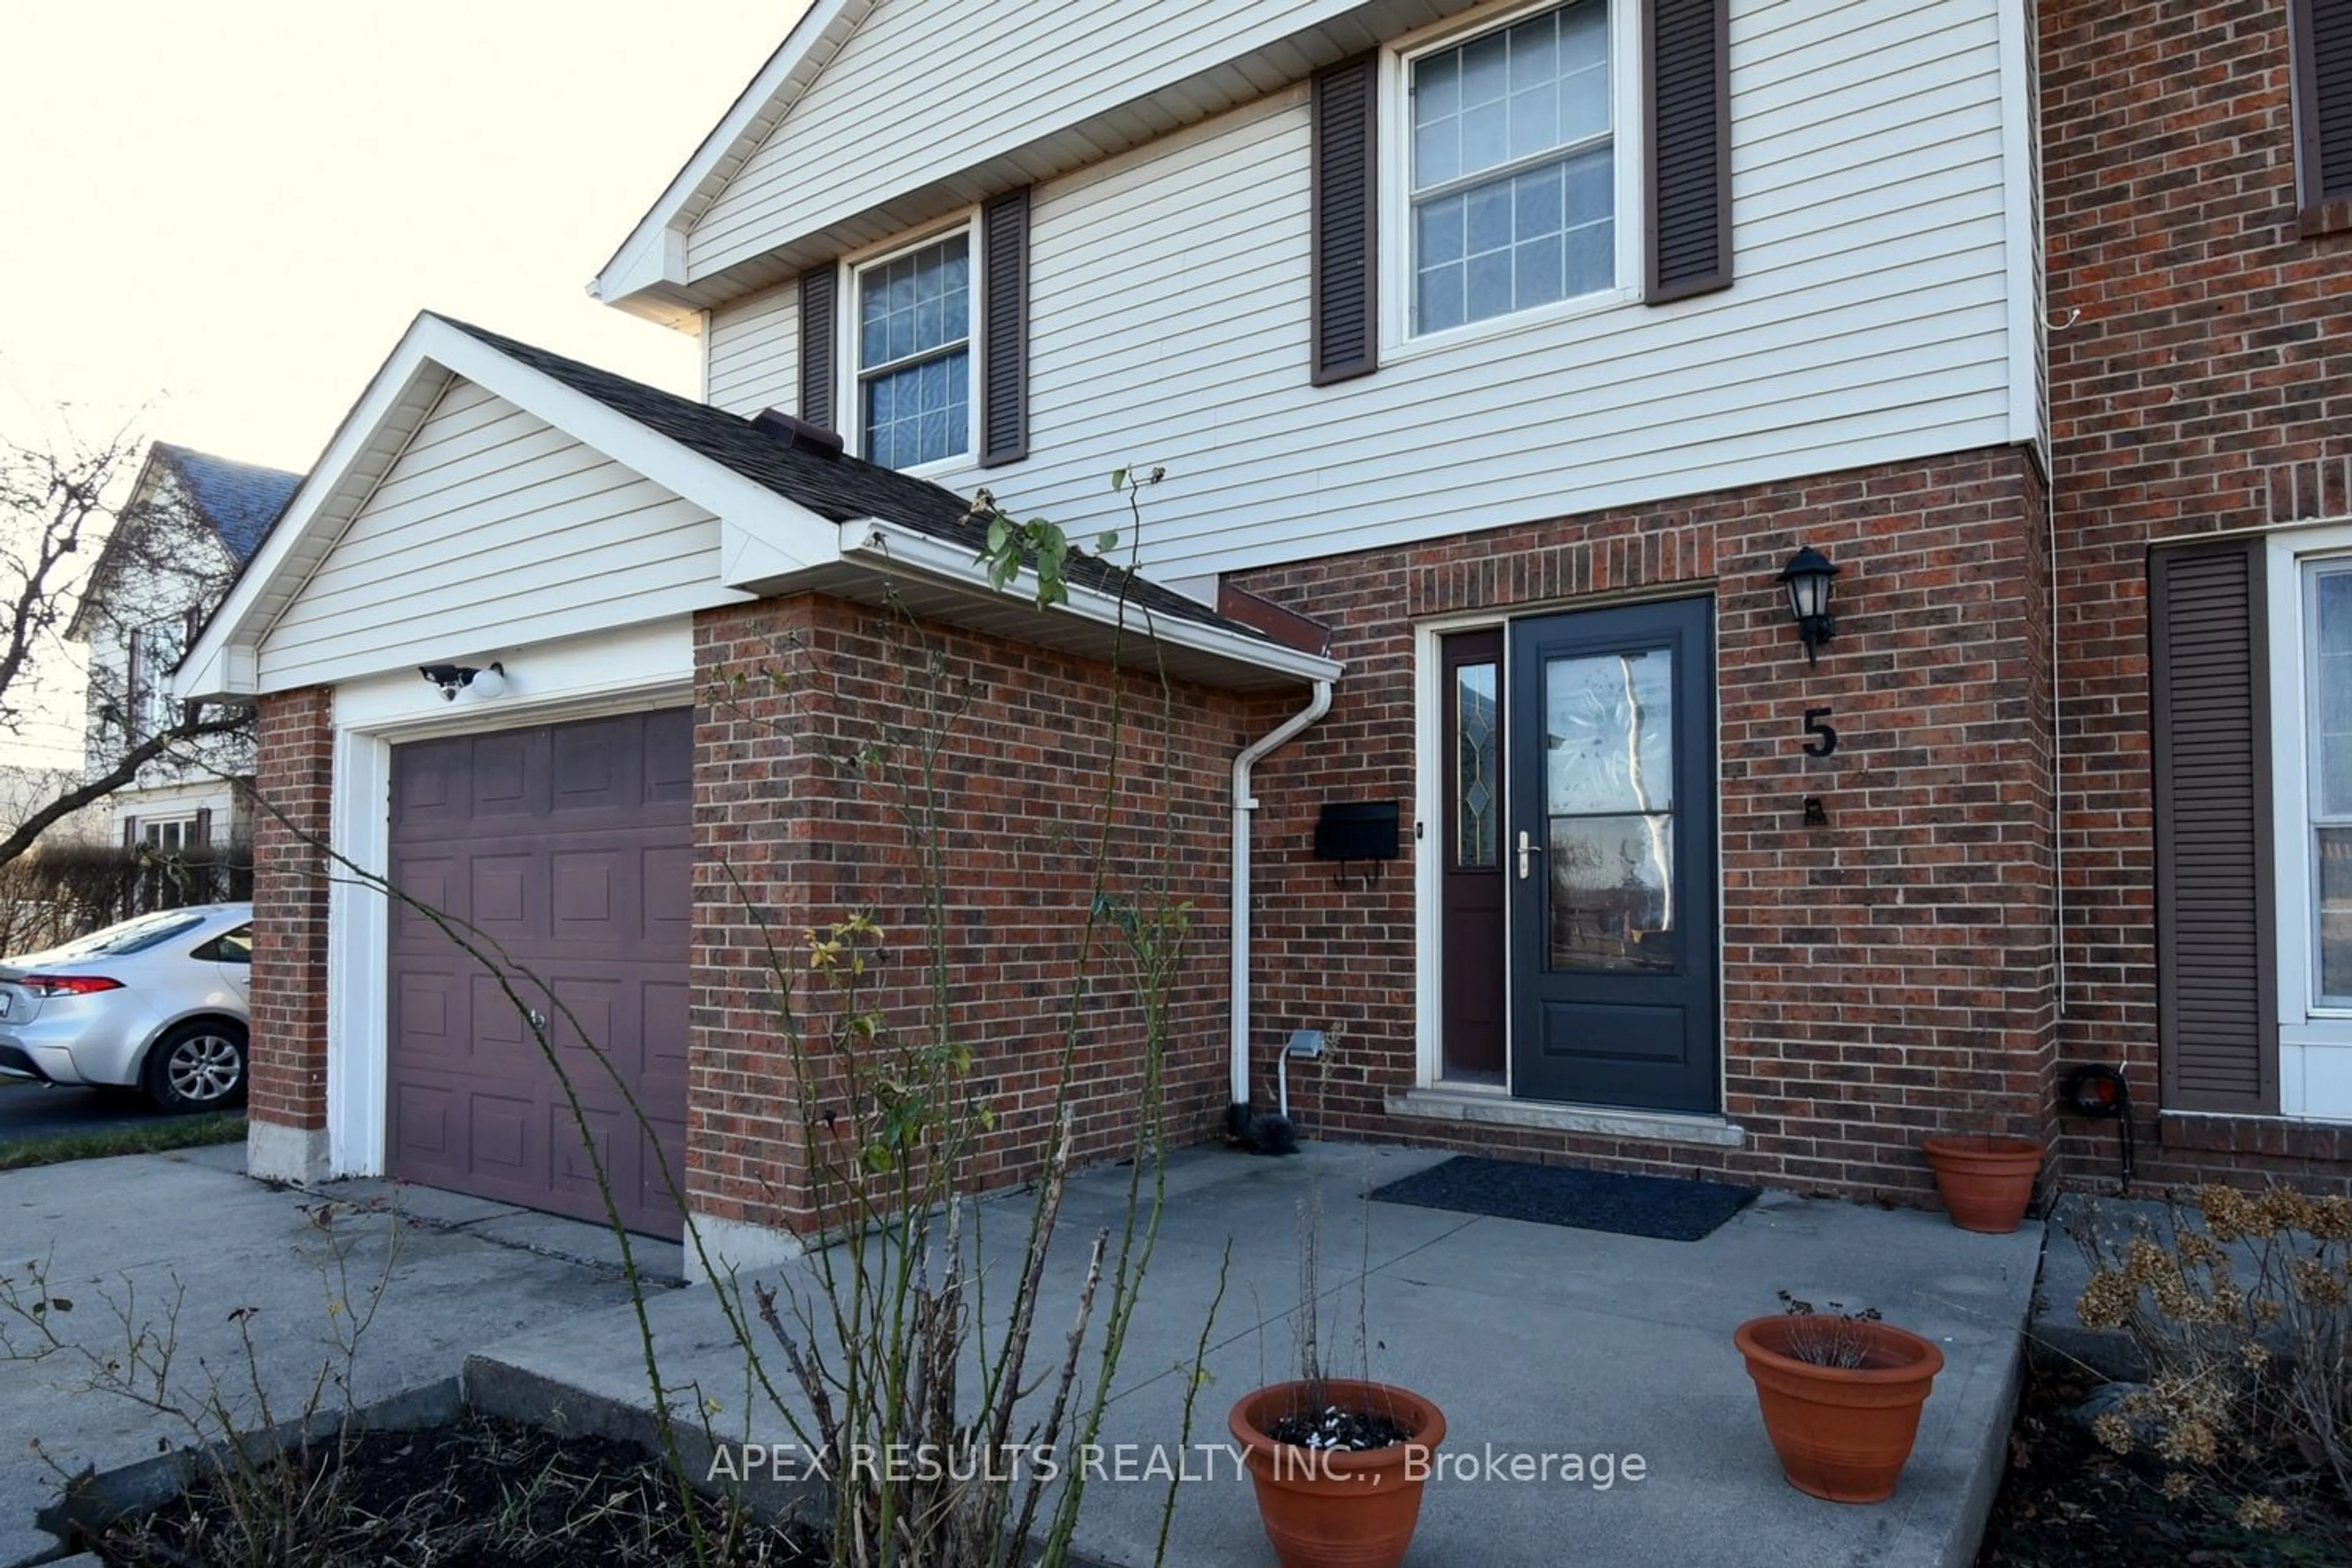 Home with brick exterior material for 5 Spartan Ave, Hamilton Ontario L8E 3X4